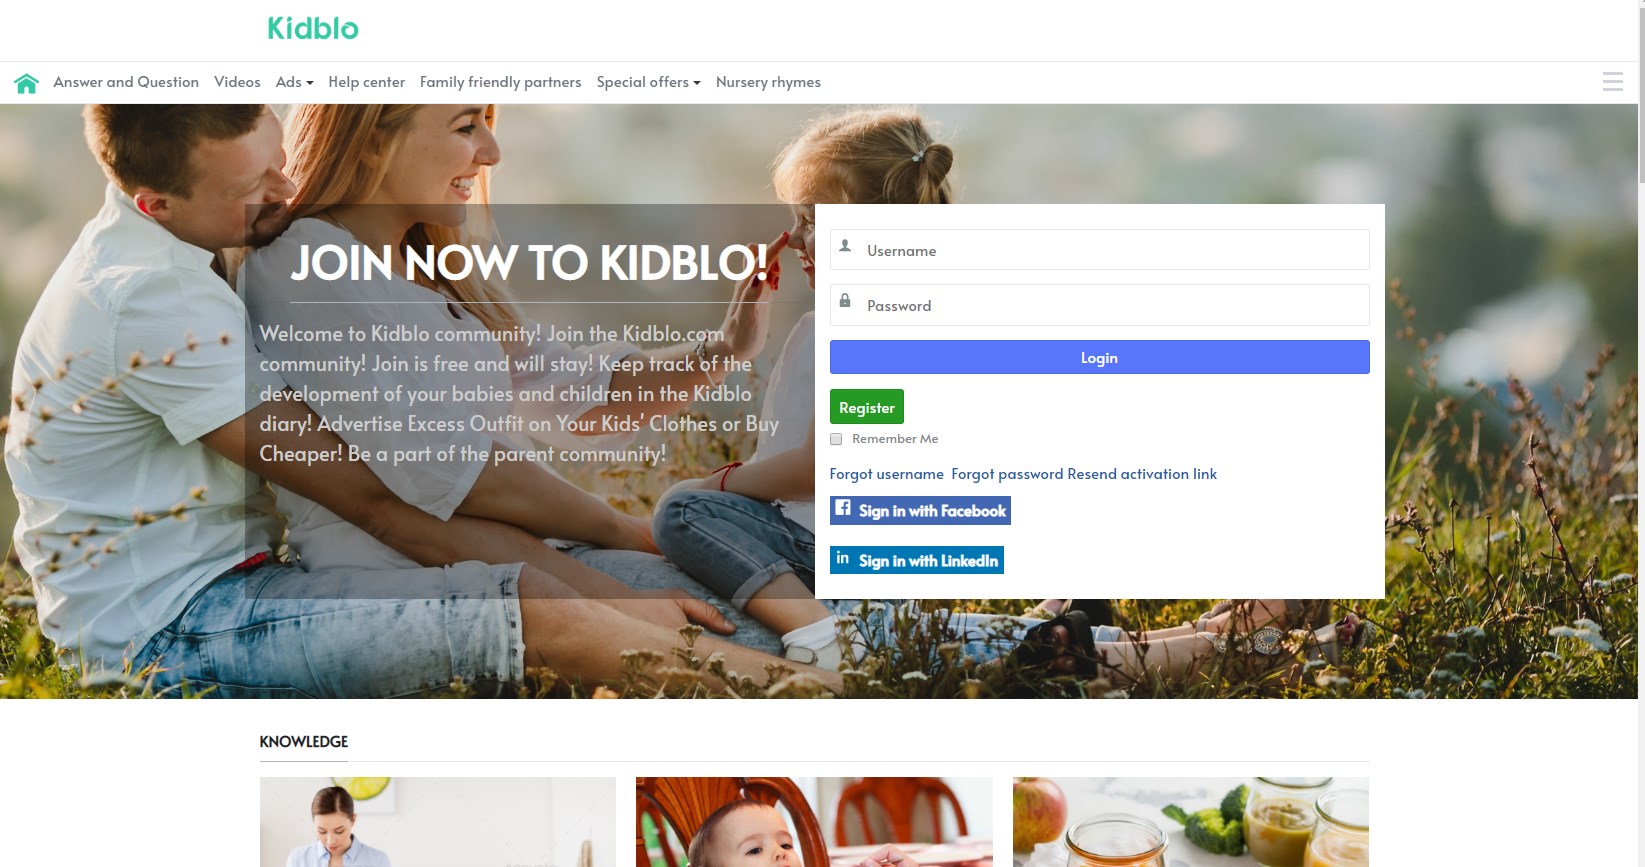 Kidblo.com